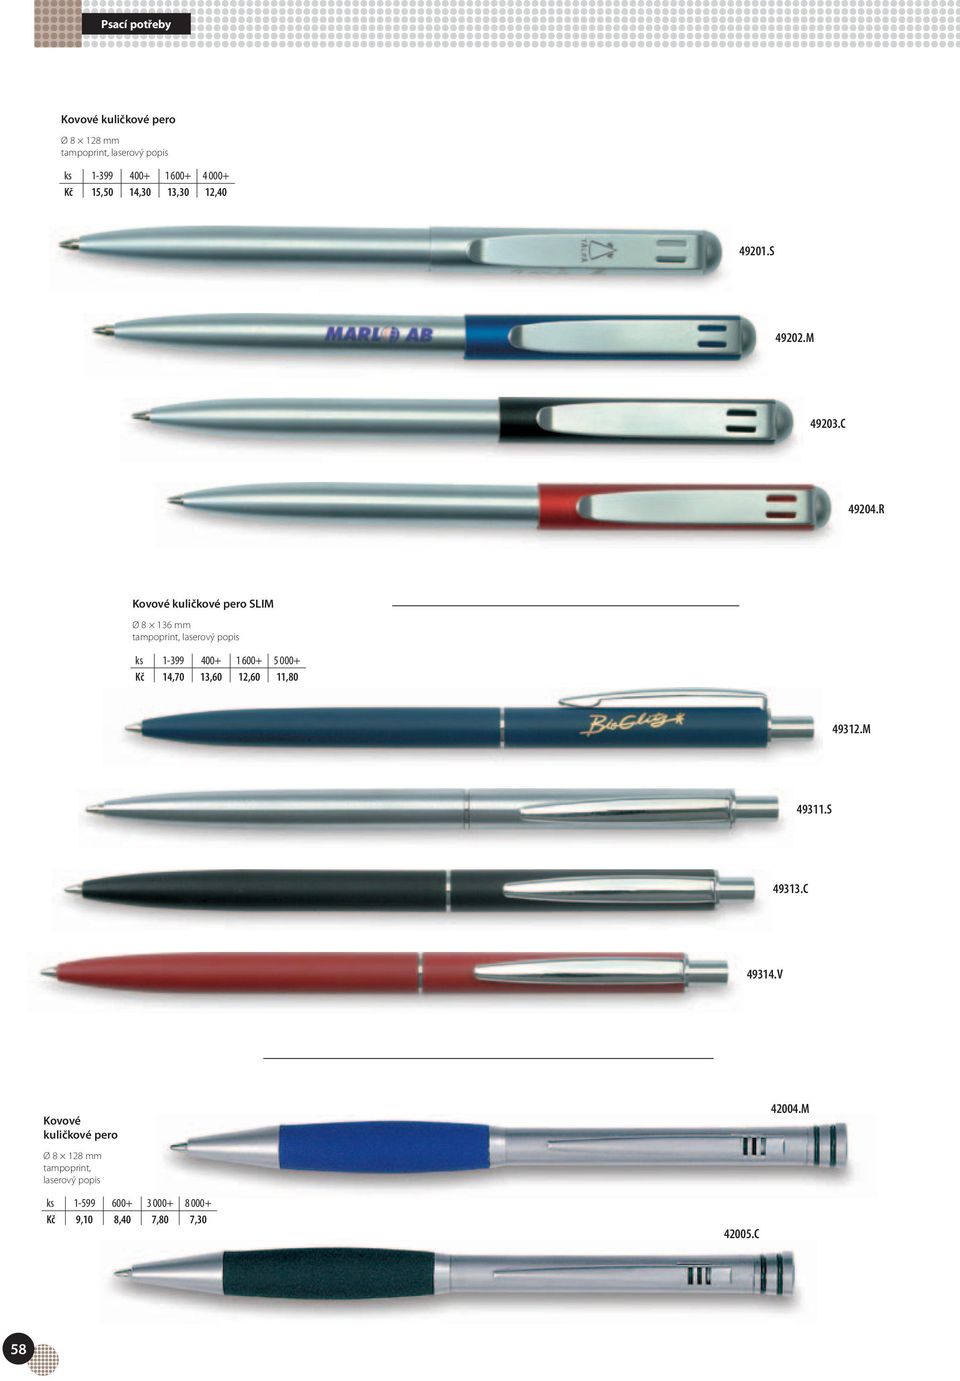 R Kovové kuličkové pero SLIM Ø 8 136 mm ks 1-399 400+ 1 600+ 5 000+ Kč 14,70 13,60 12,60